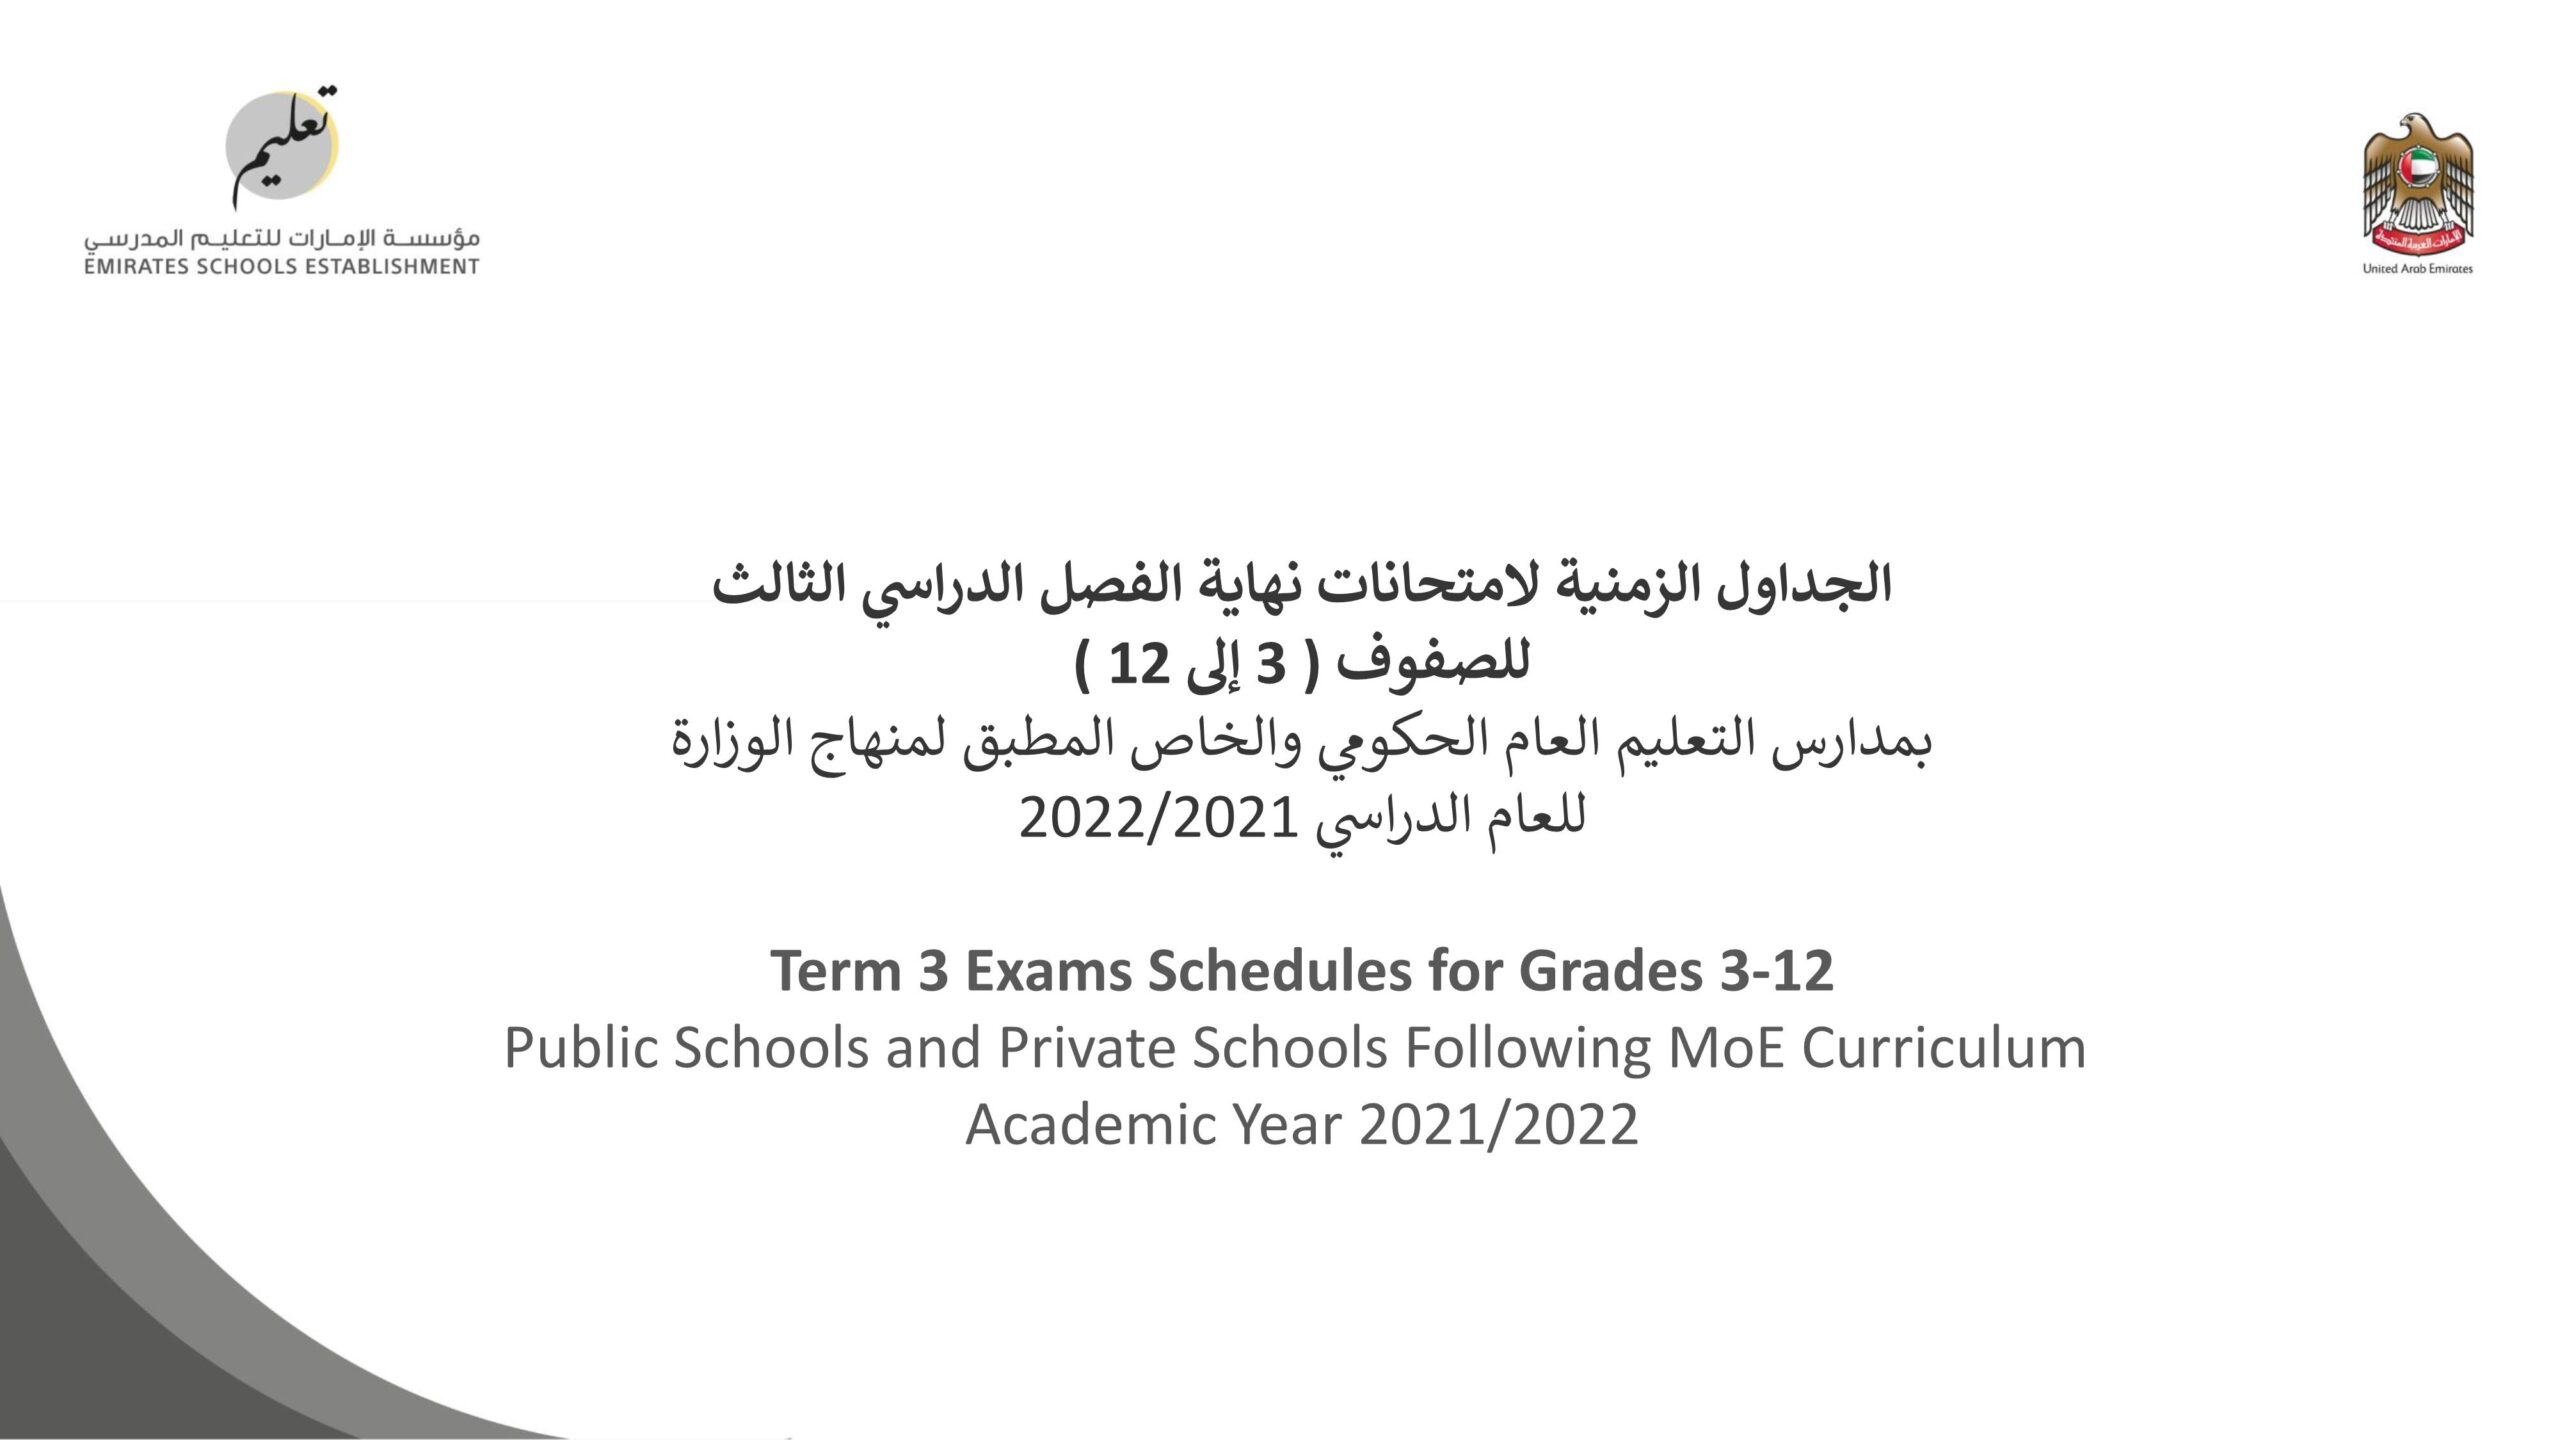 الجداول الزمنية لامتحانات نهاية الفصل الدراسي الثالث الصفوف الثالث إلى الثاني عشر